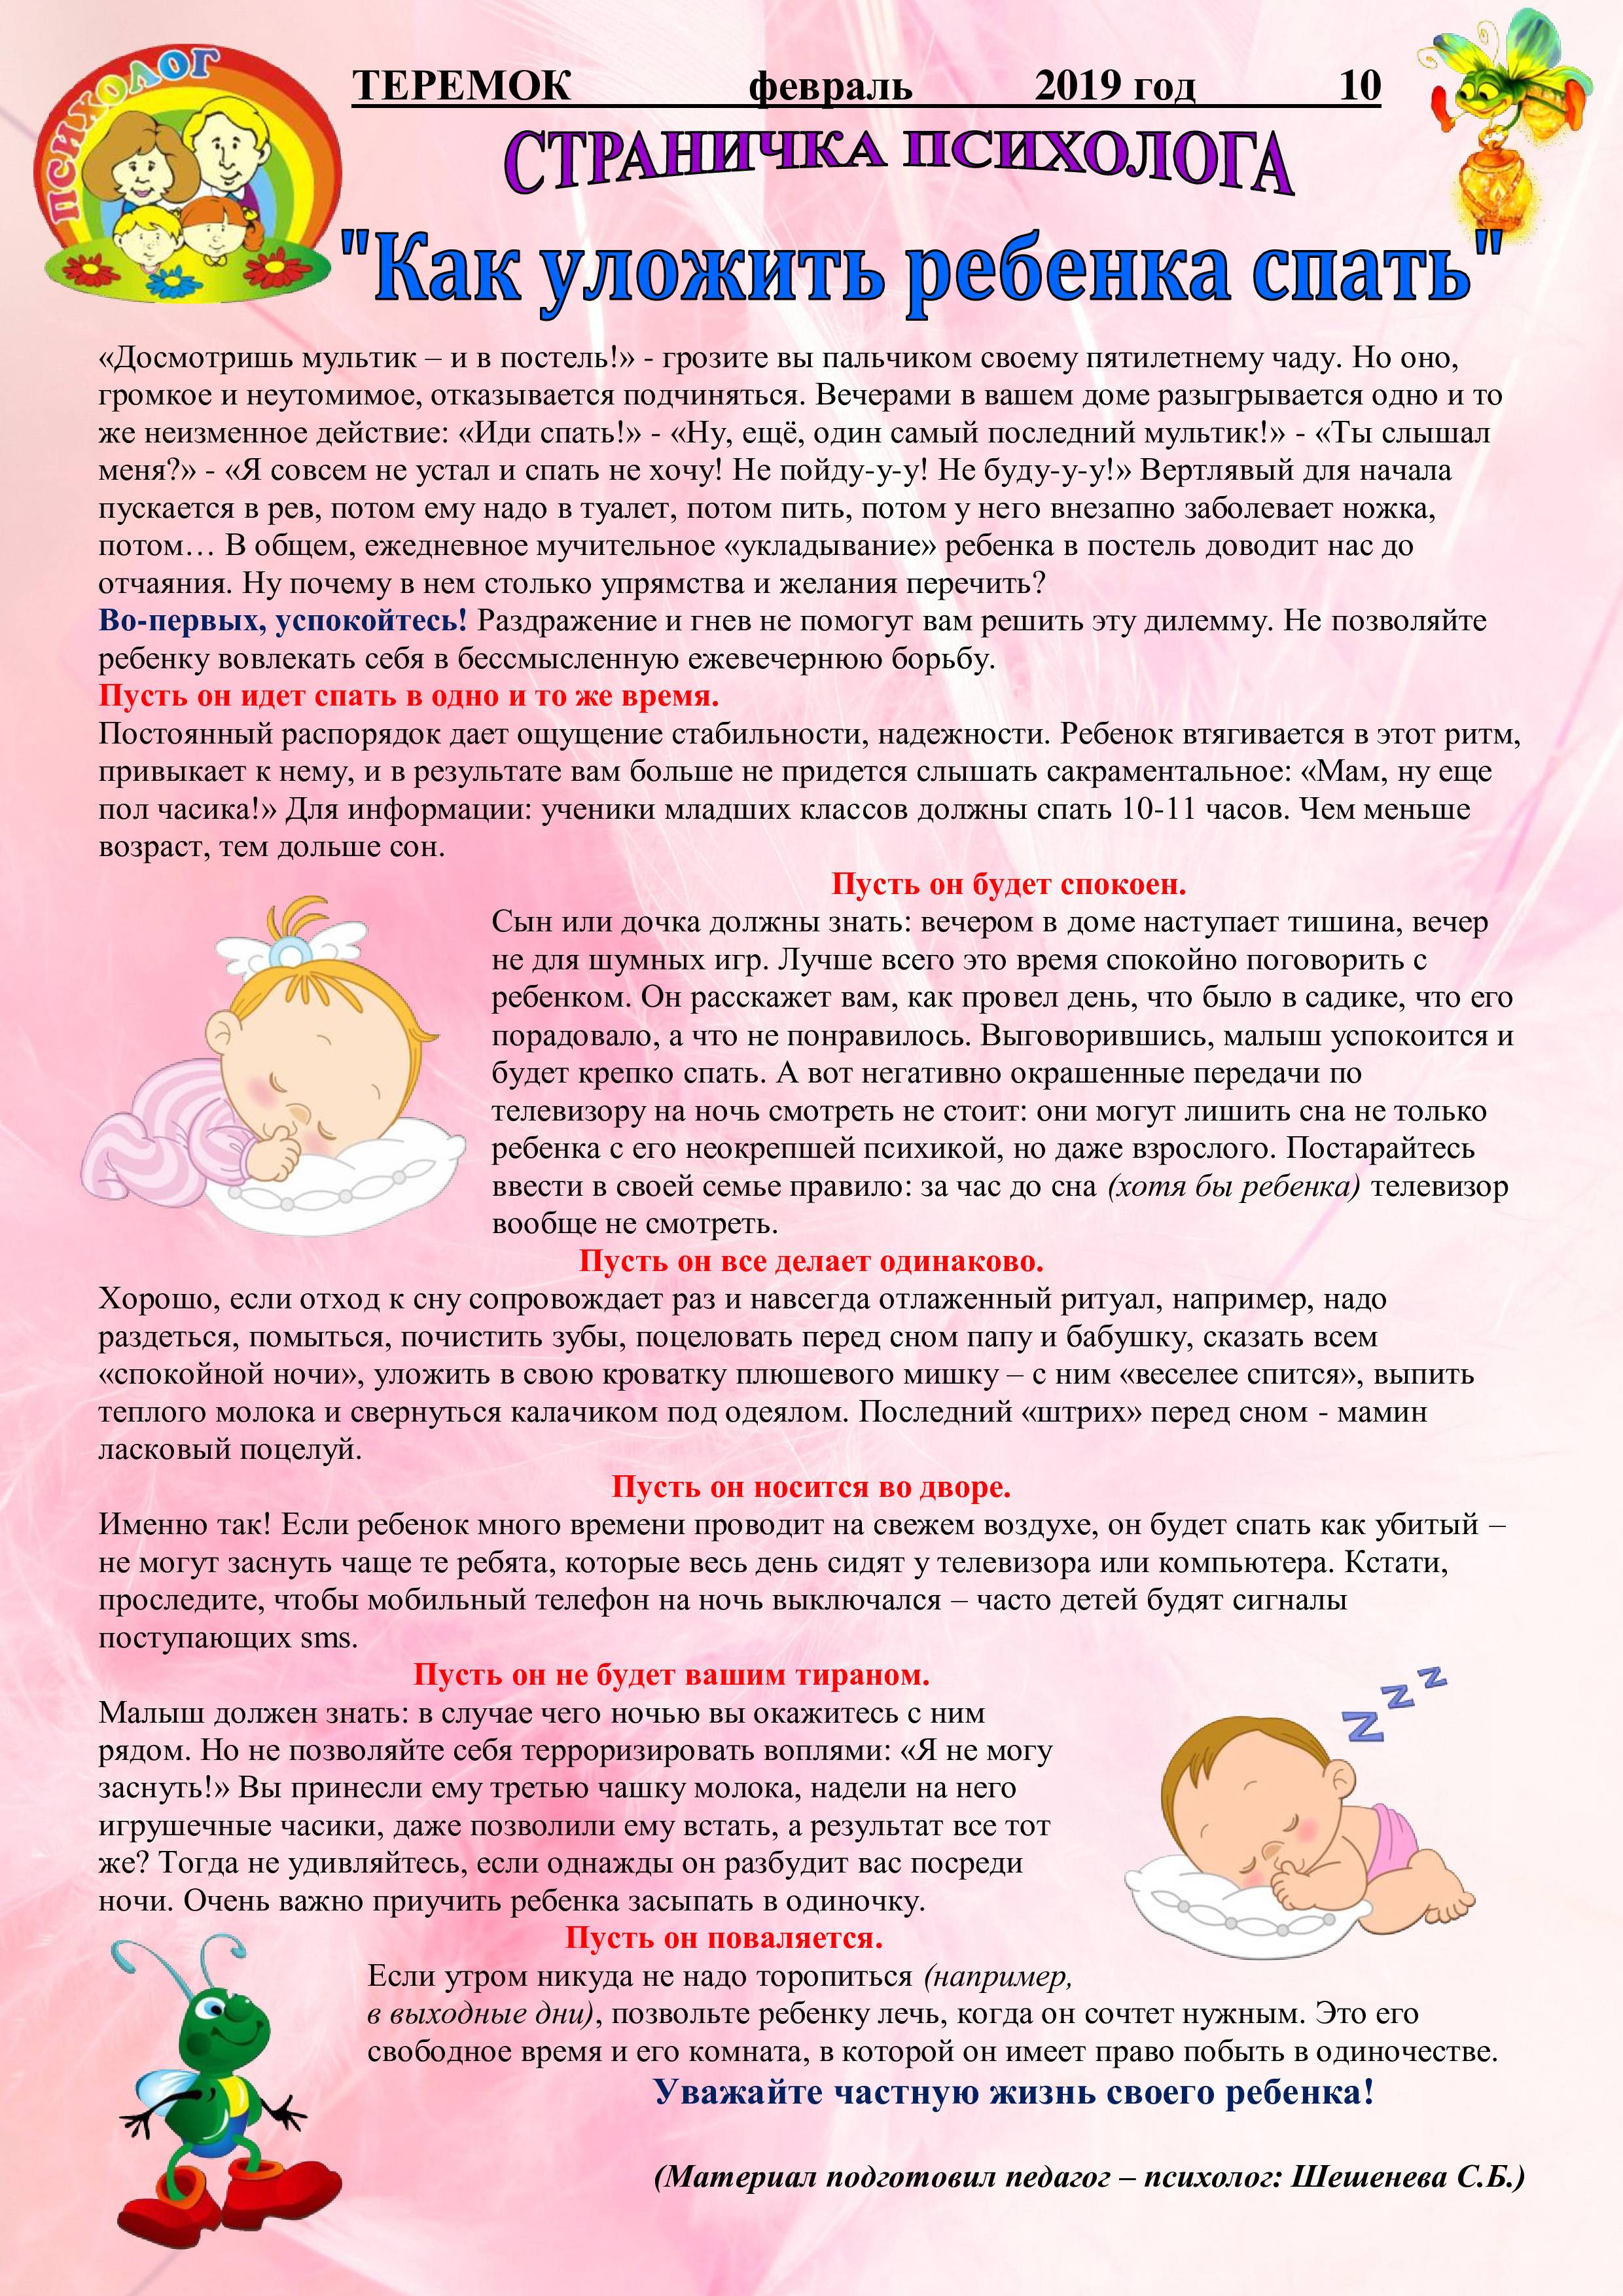 Как уложить новорожденного спать: в кроватку, в какой позе правильно укладывать, можно ли на живот, а также днем, ночью, после кормления и без укачивания